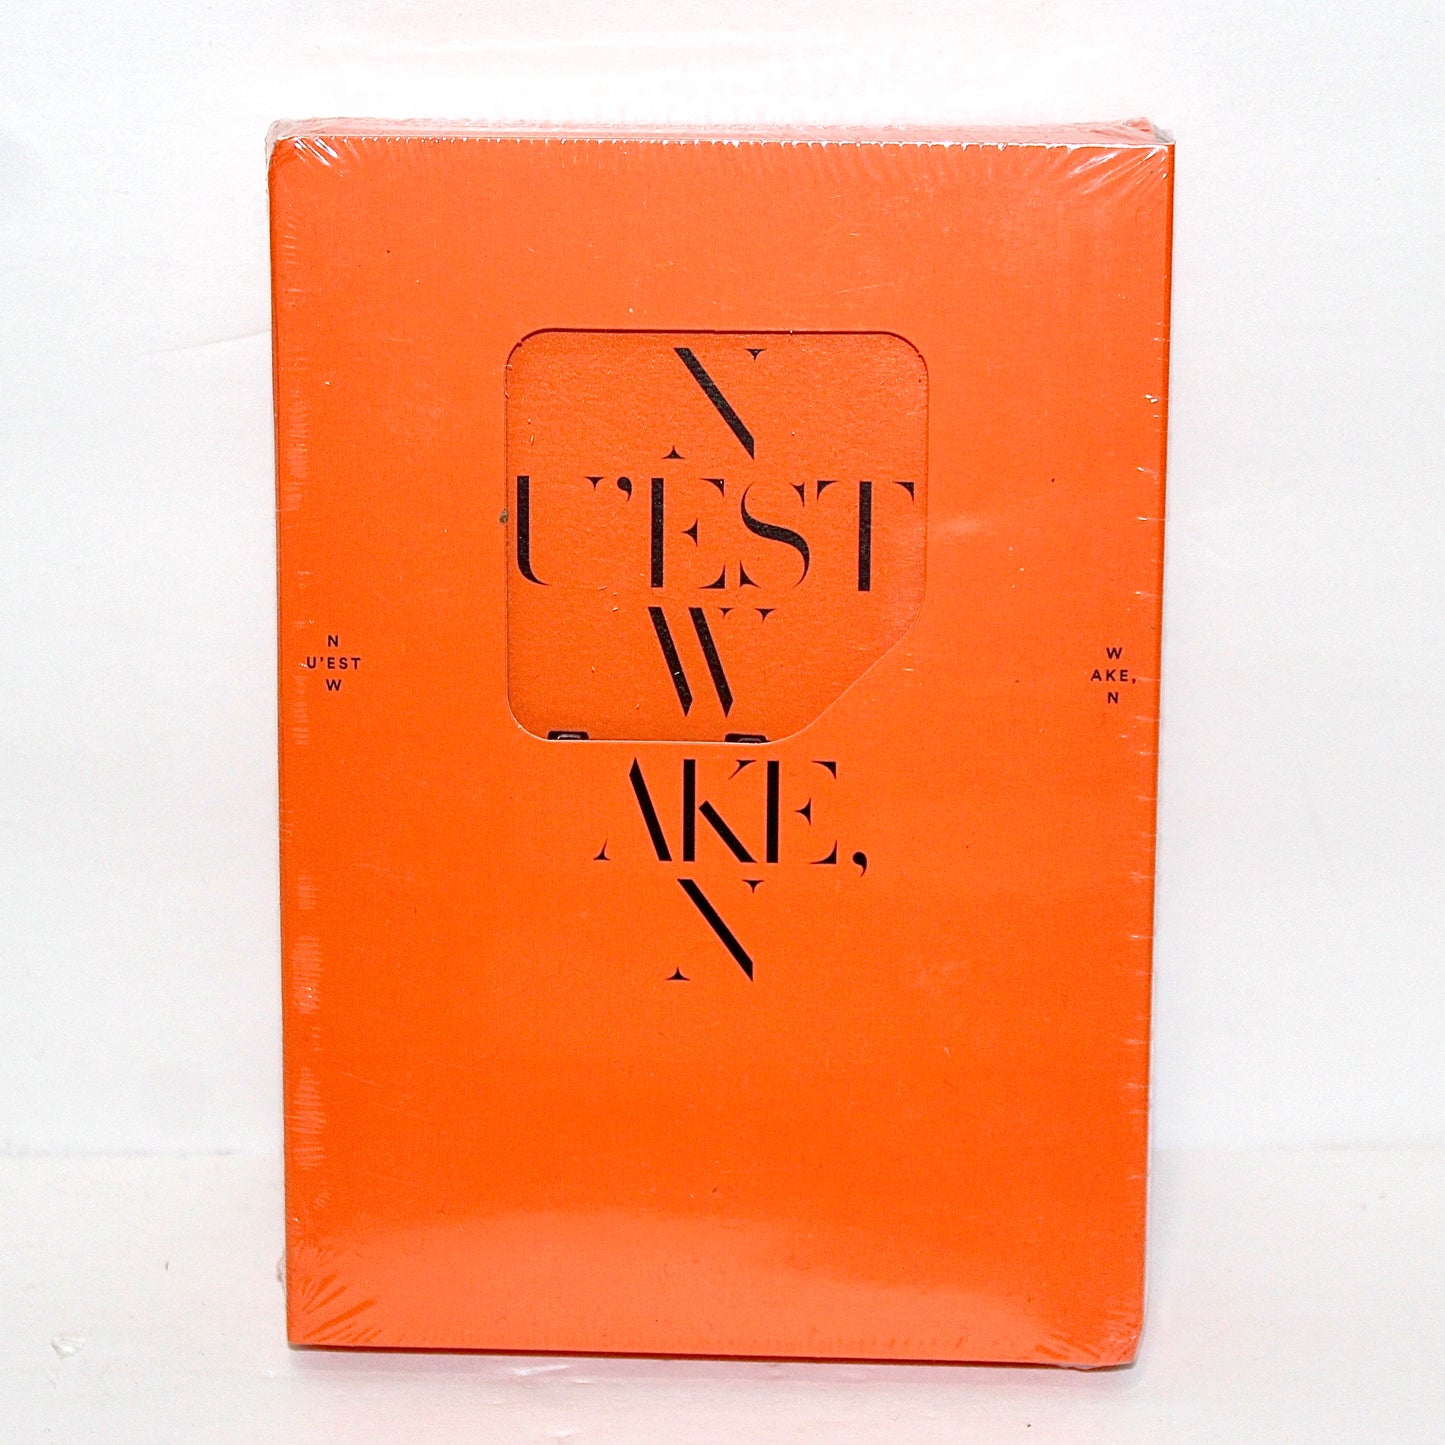 NU'EST W 3rd Mini Album: WAKE, N | Kihno Kit